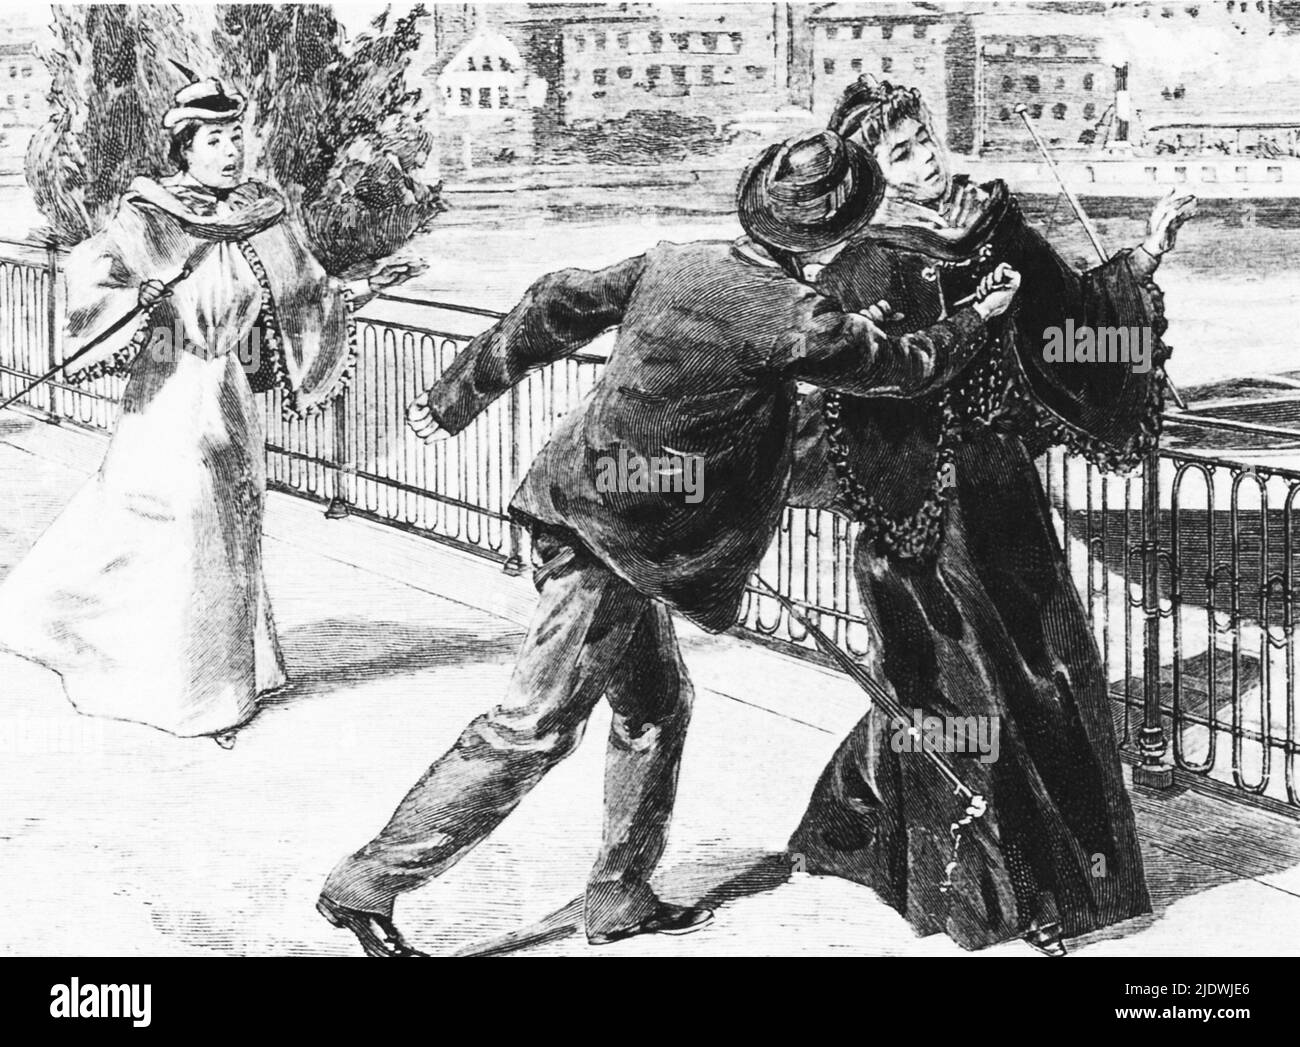 1898 , Vienne , Autriche : l'assassinat de la célèbre impératrice autrichienne Elisabeth de HABSBOURG ( SISSI von Wittelsbach , 1937 - 1898 ) dans un magazine d'illustration populaire . L'impératrice a été tuée par l'anarchiste italien Luigi Luccheni à Genève , Suisse - ABSBURG - ASBURG - ASBURGO - NOBLESSE - NOBILI - NOBILTA' - REALI - HASBURG - ROYALTIES - ELISABETTA DI BAVIERA - robe noire - abito vestito nero - assinio - regicidio - anarchico - anarchia --- Archivio GBB Banque D'Images